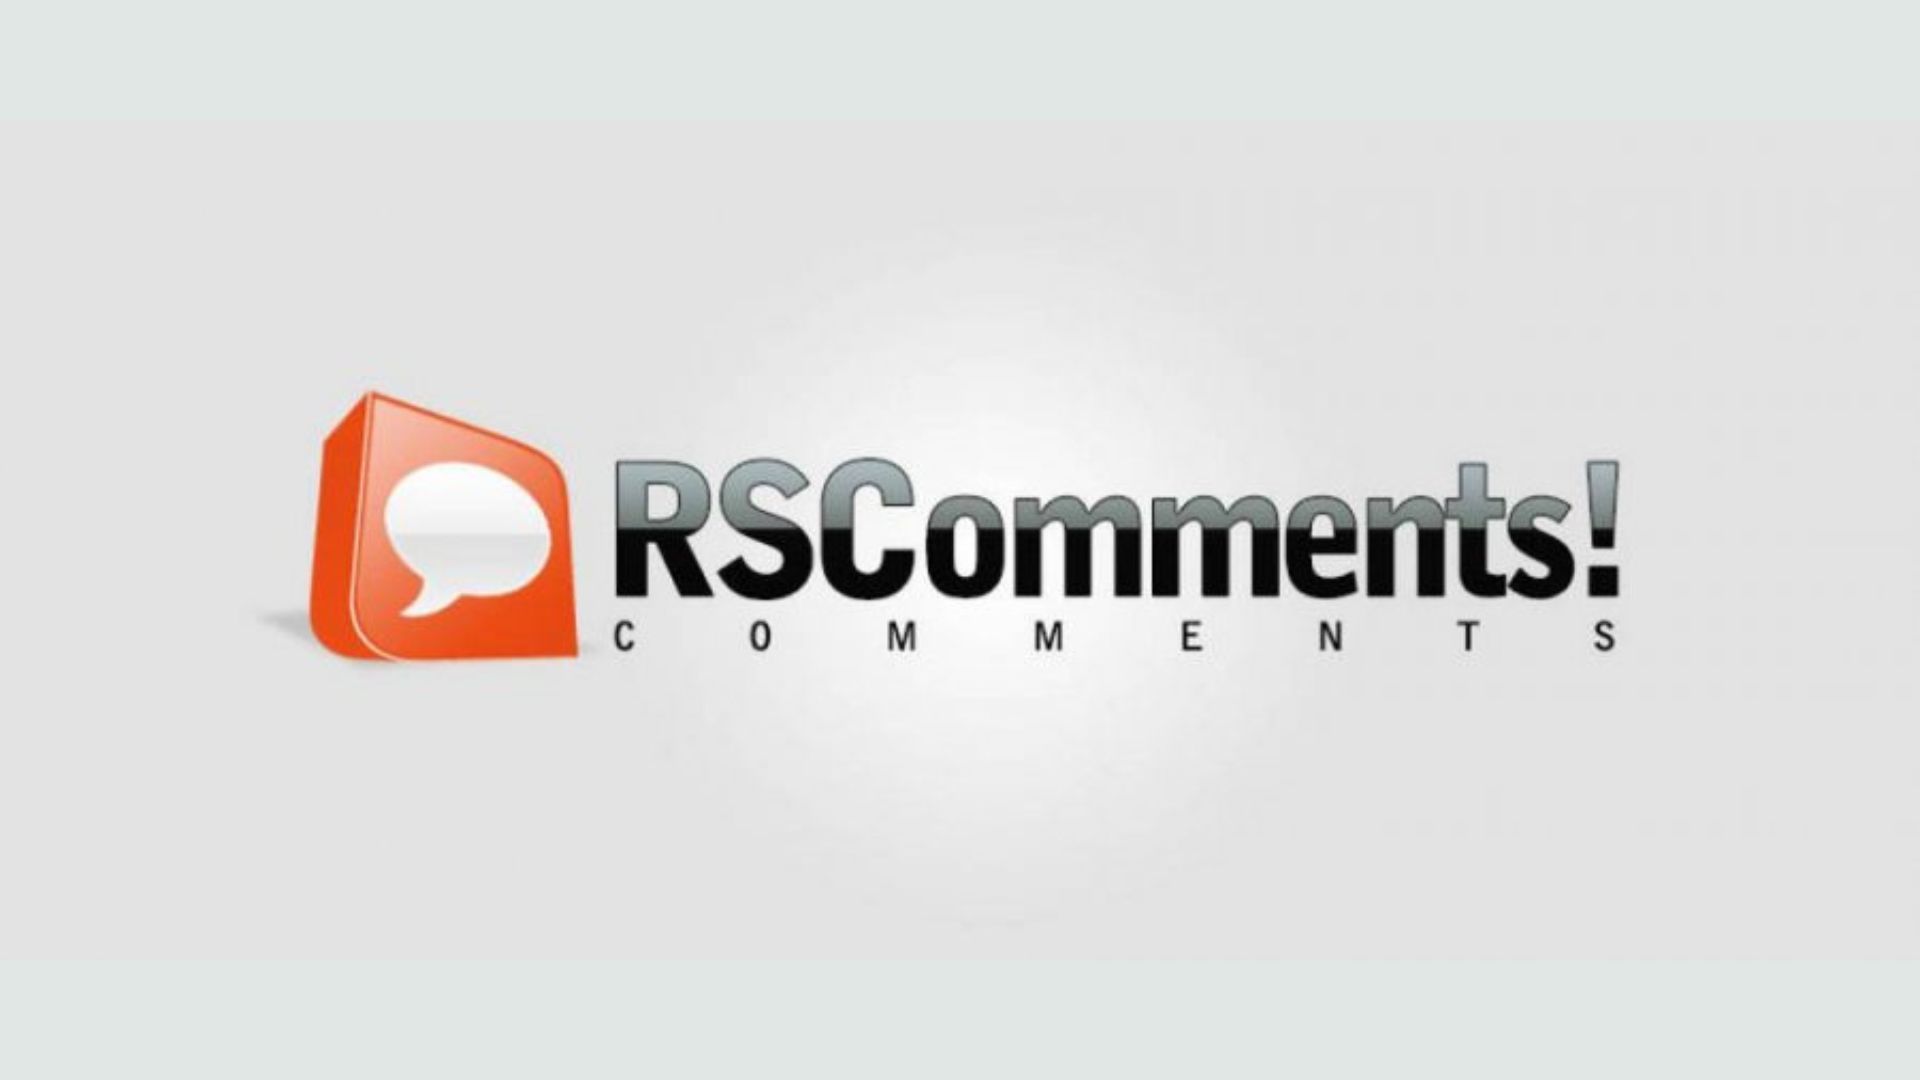 RSComments! 1.14.1